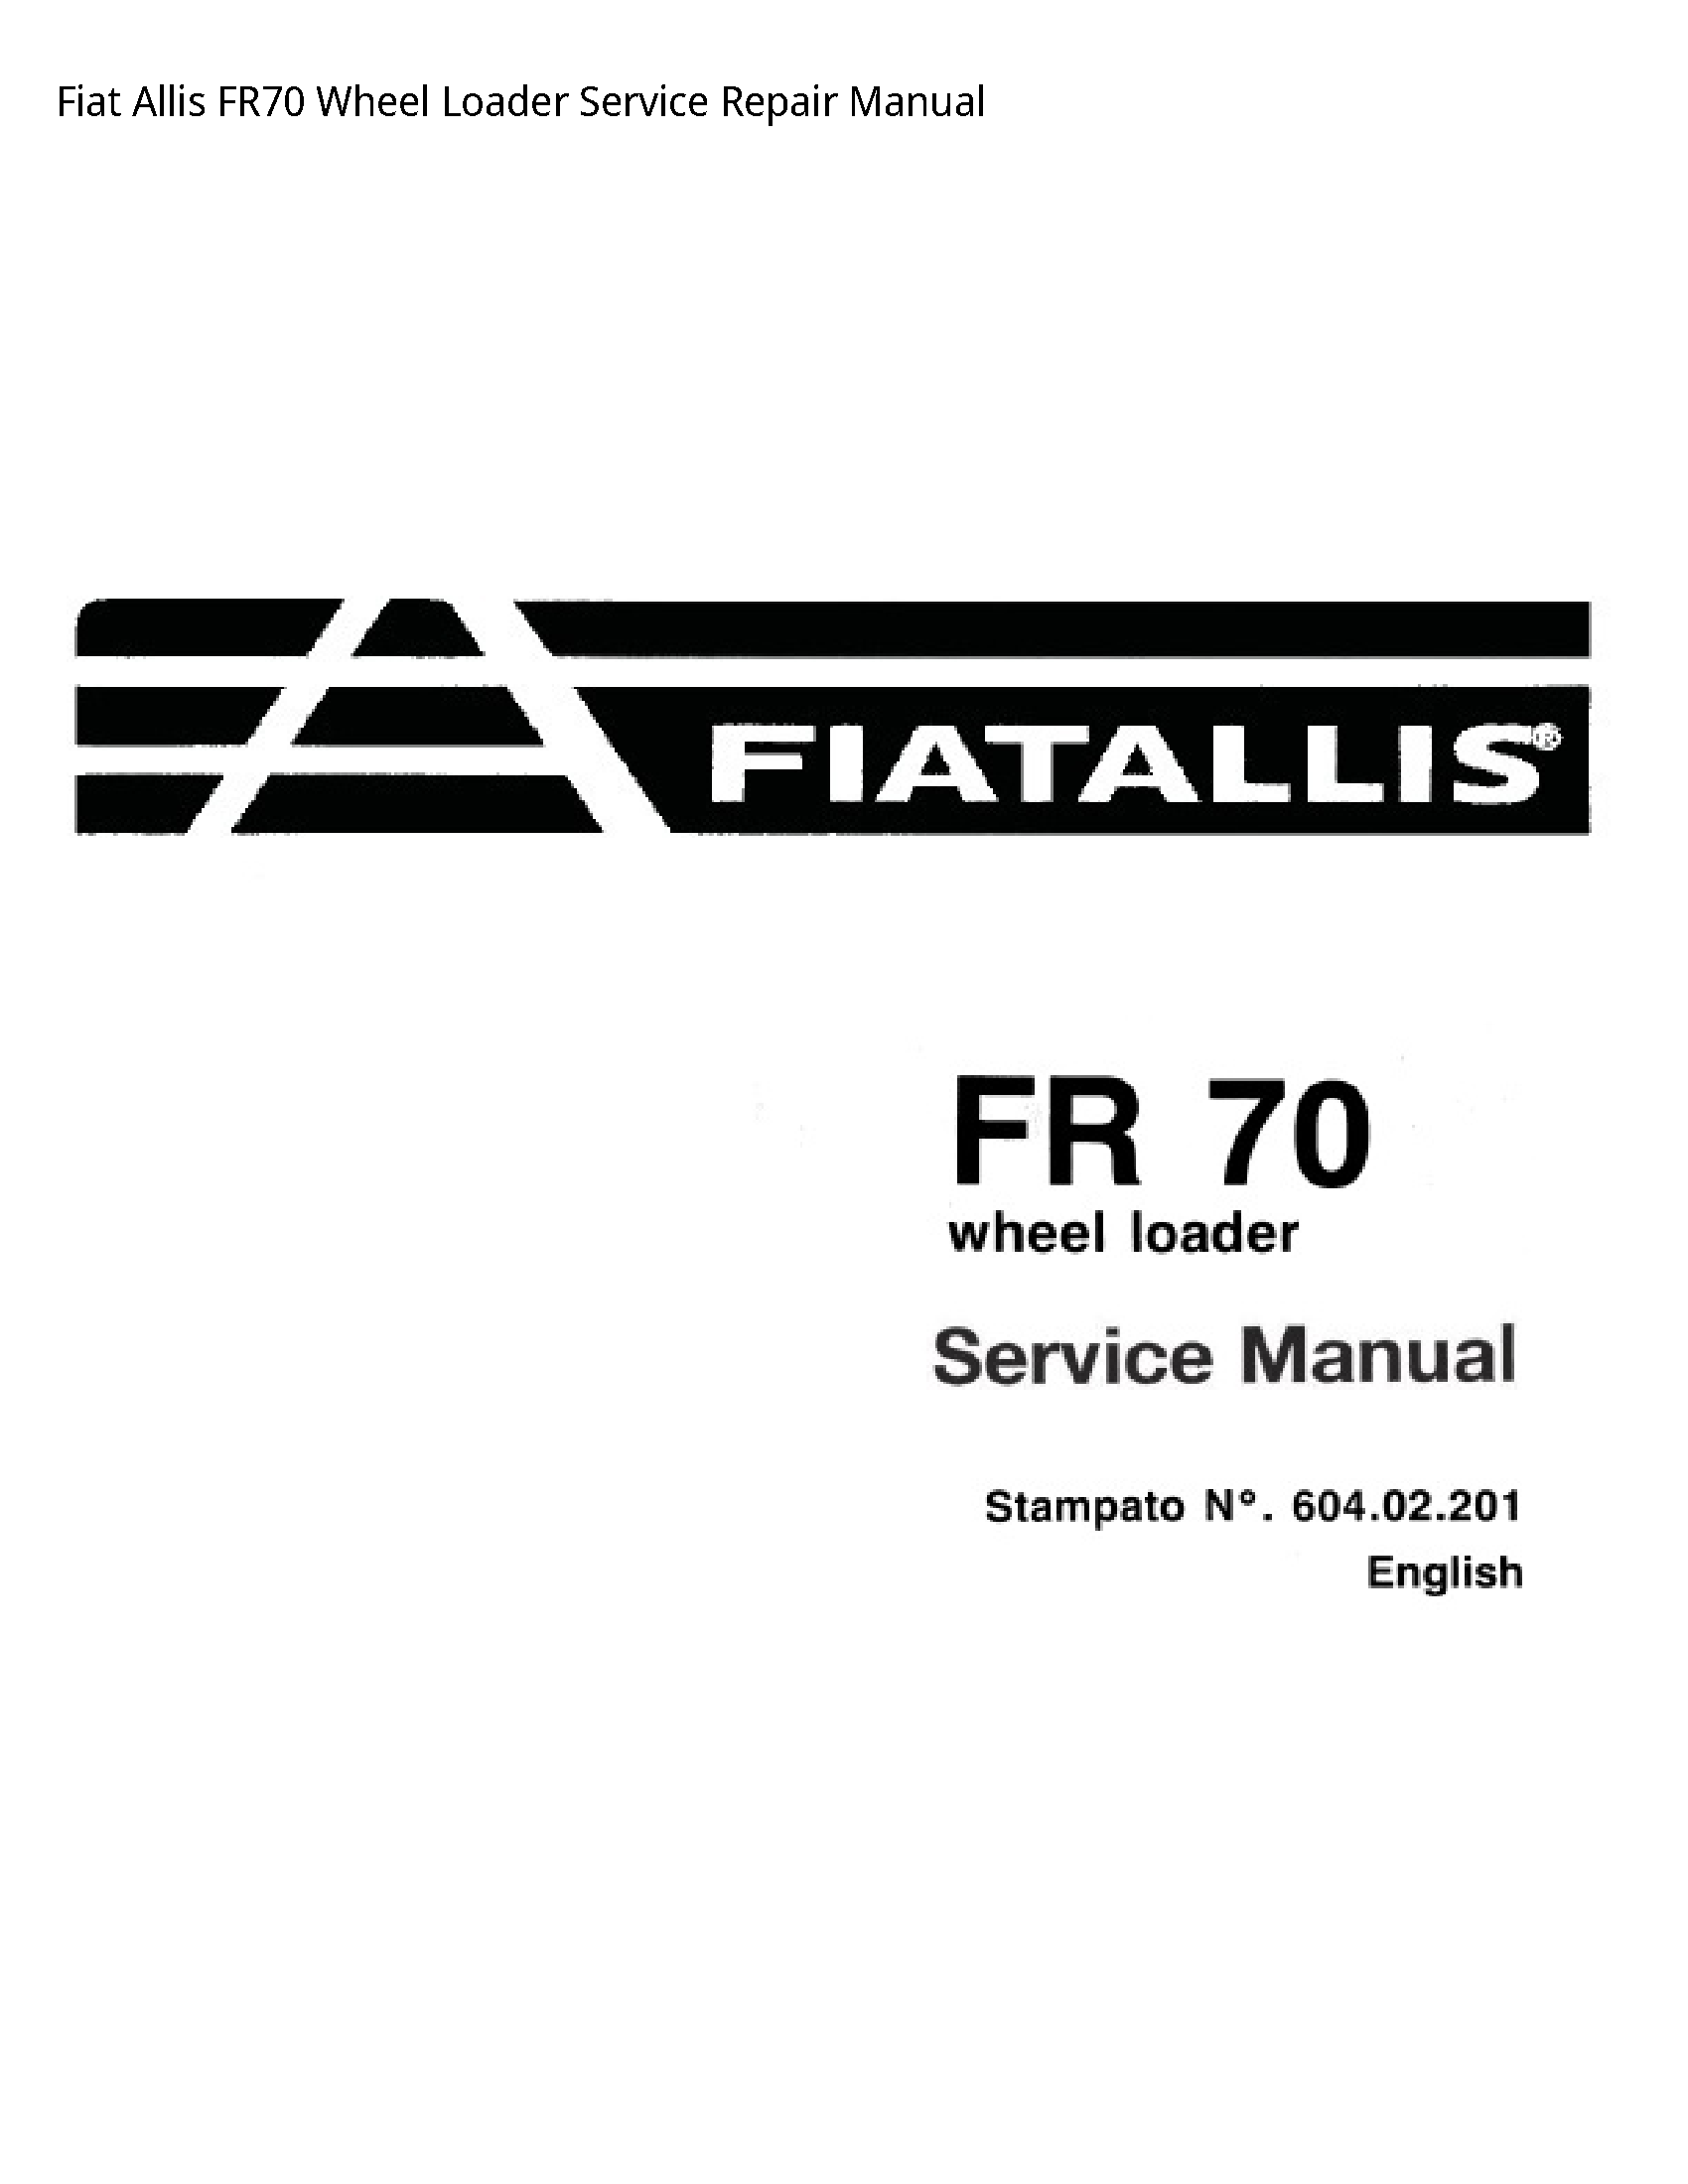 Fiat Allis FR70 Wheel Loader manual